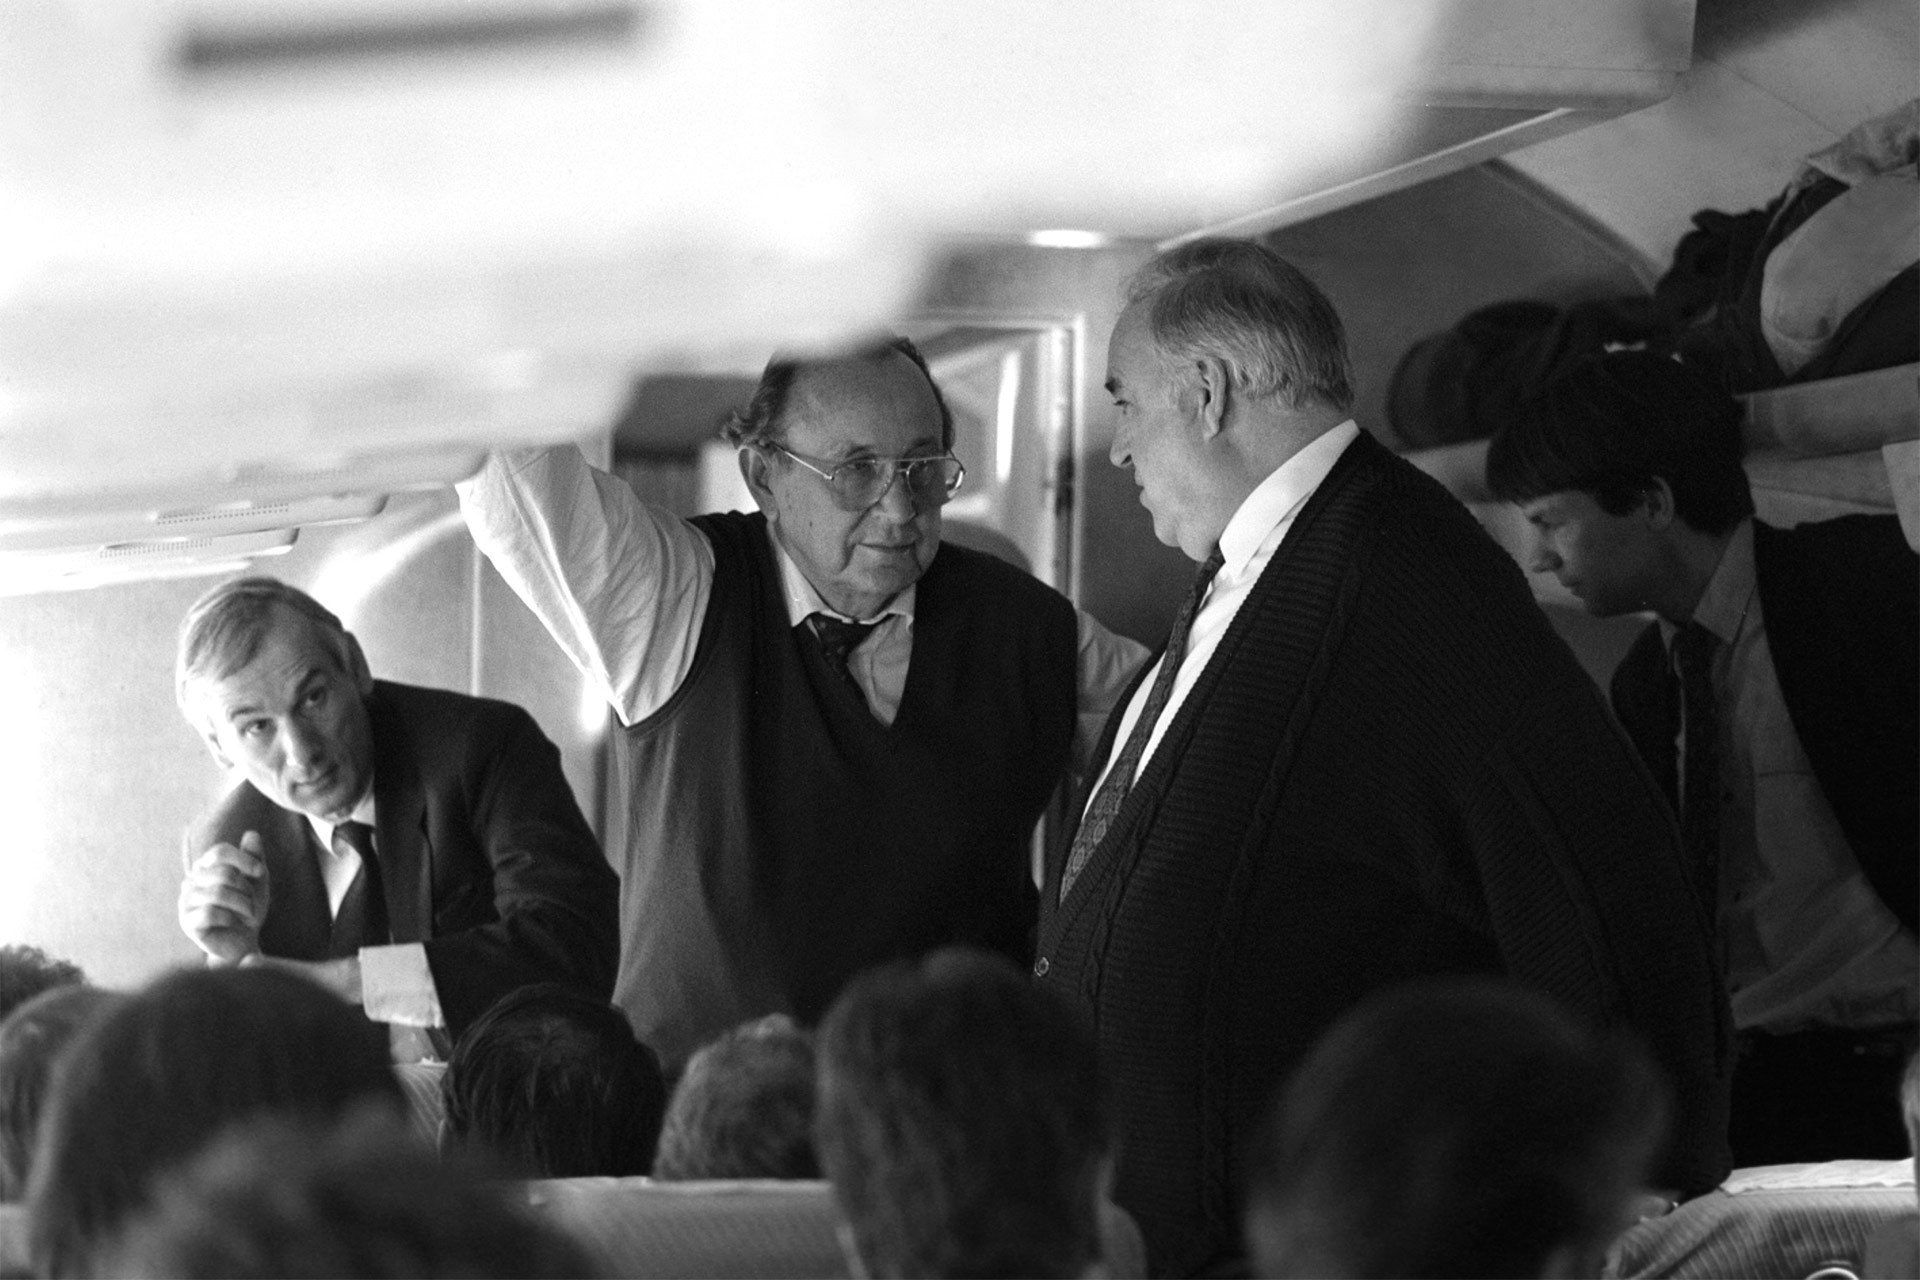 Hans-Dietrich Genscher und Helmut Kohl im Flugzeug.